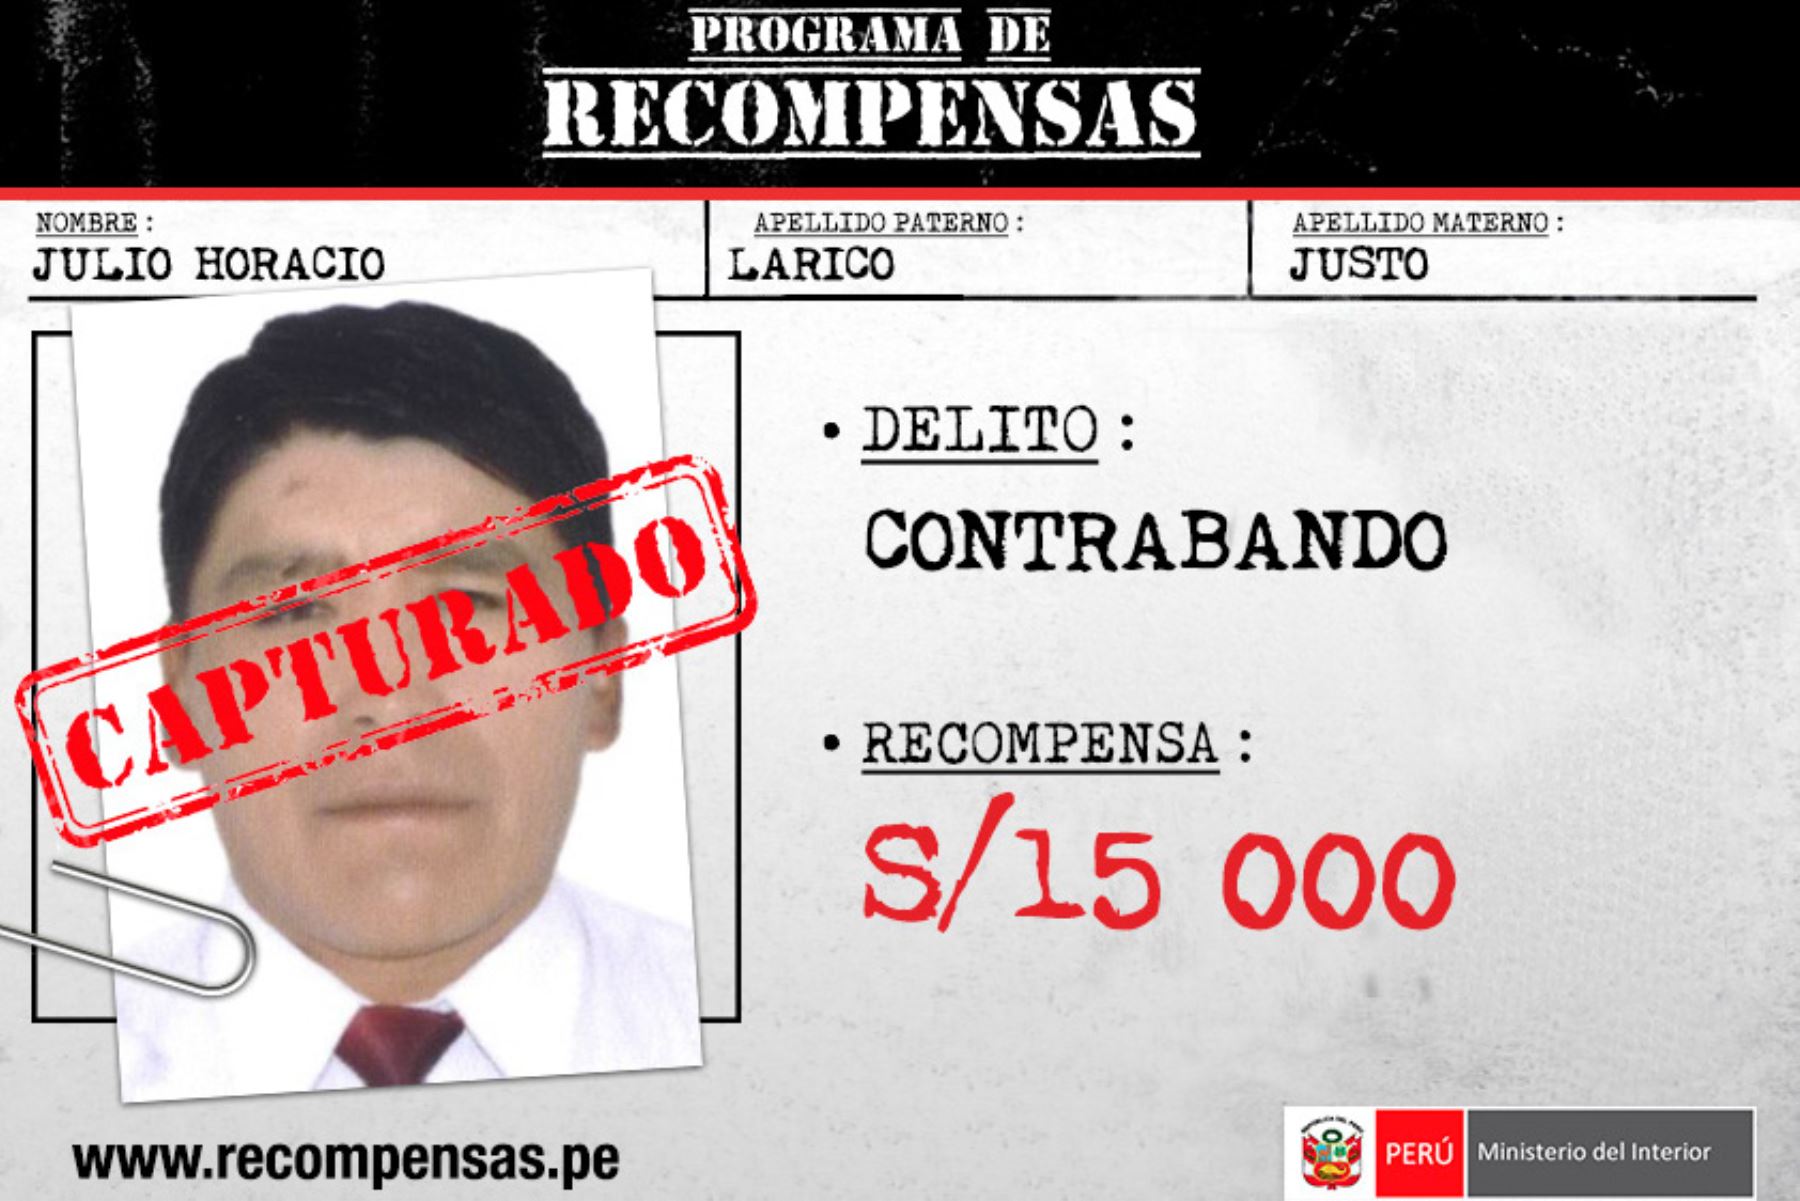 La Policía Nacional del Perú (PNP) capturó en Puno a Julio Horacio Larico Justo, de 44 años de edad, incluido en el Programa de Recompensas “Que ellos se cuiden” del Ministerio del Interior (Mininter) por el delito de contrabando. Se ofrecía 15,000 soles por información que conllevara a su captura.